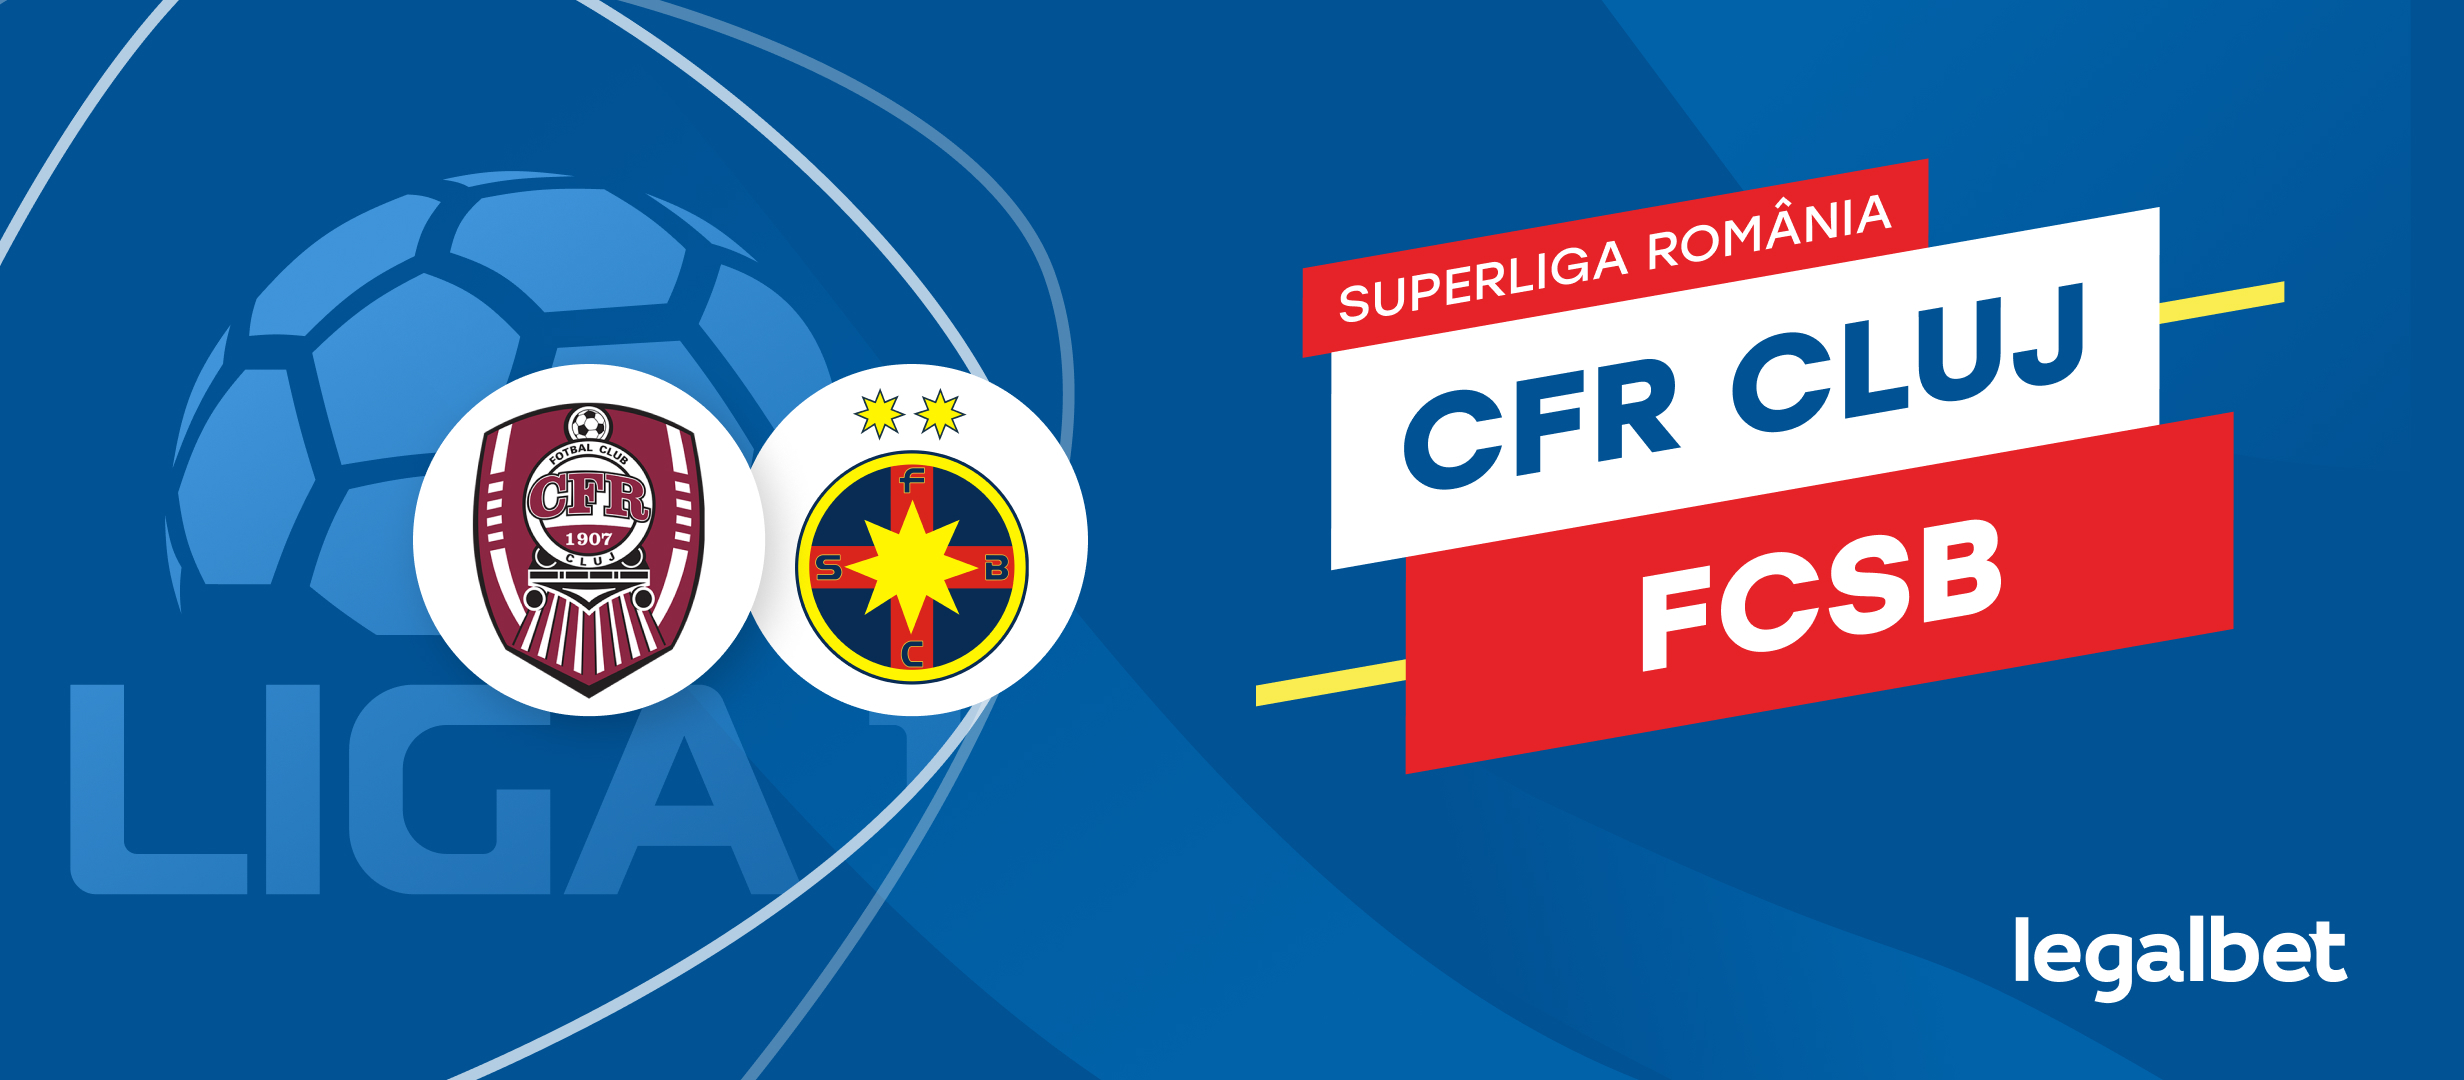 CFR Cluj - FCSB: cote la pariuri si statistici